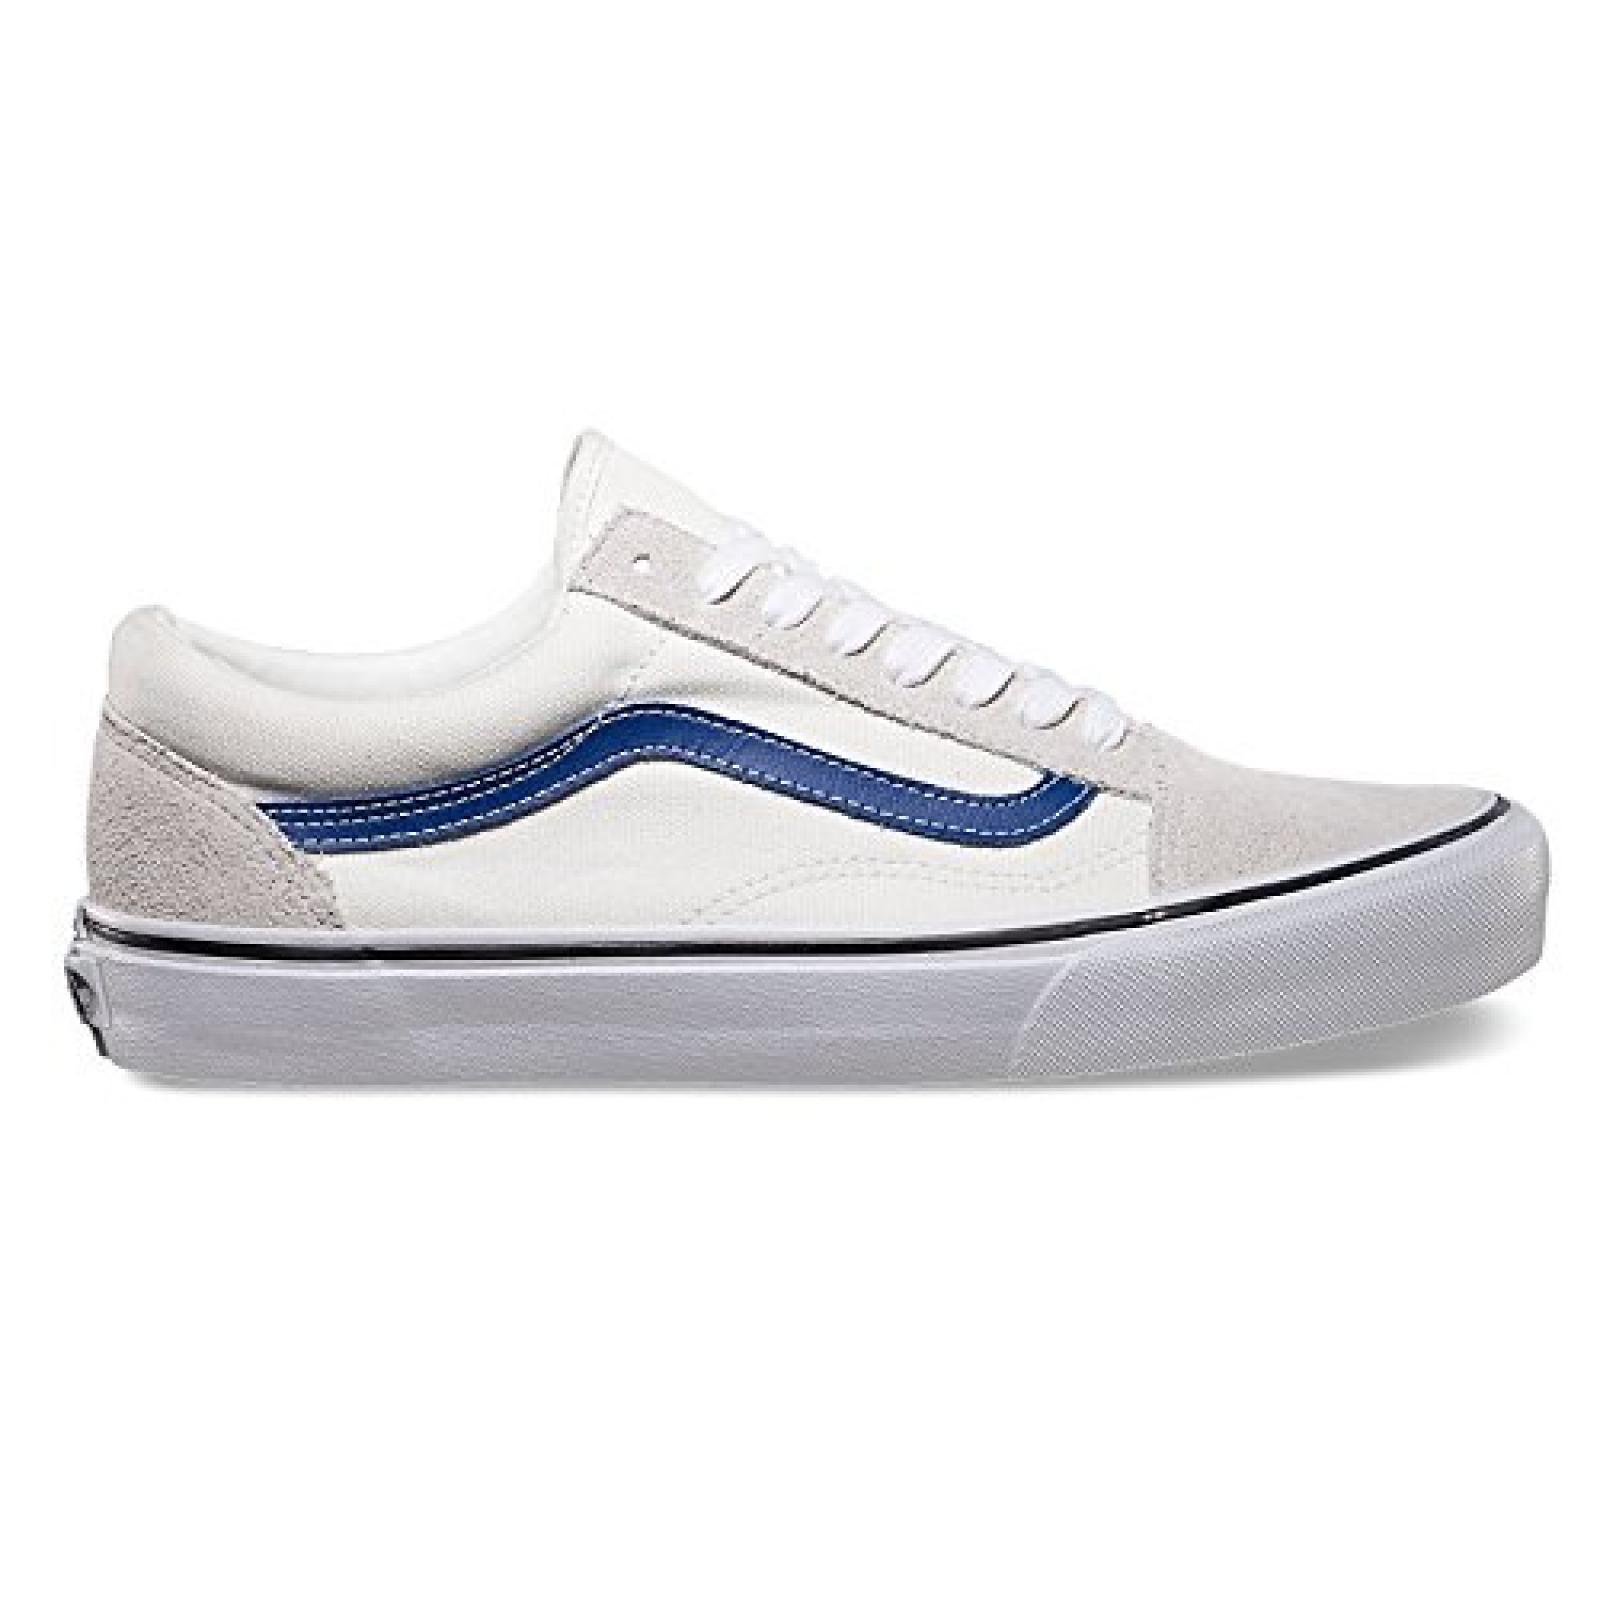 Vans Old Skool Shoes - White/true Blue 